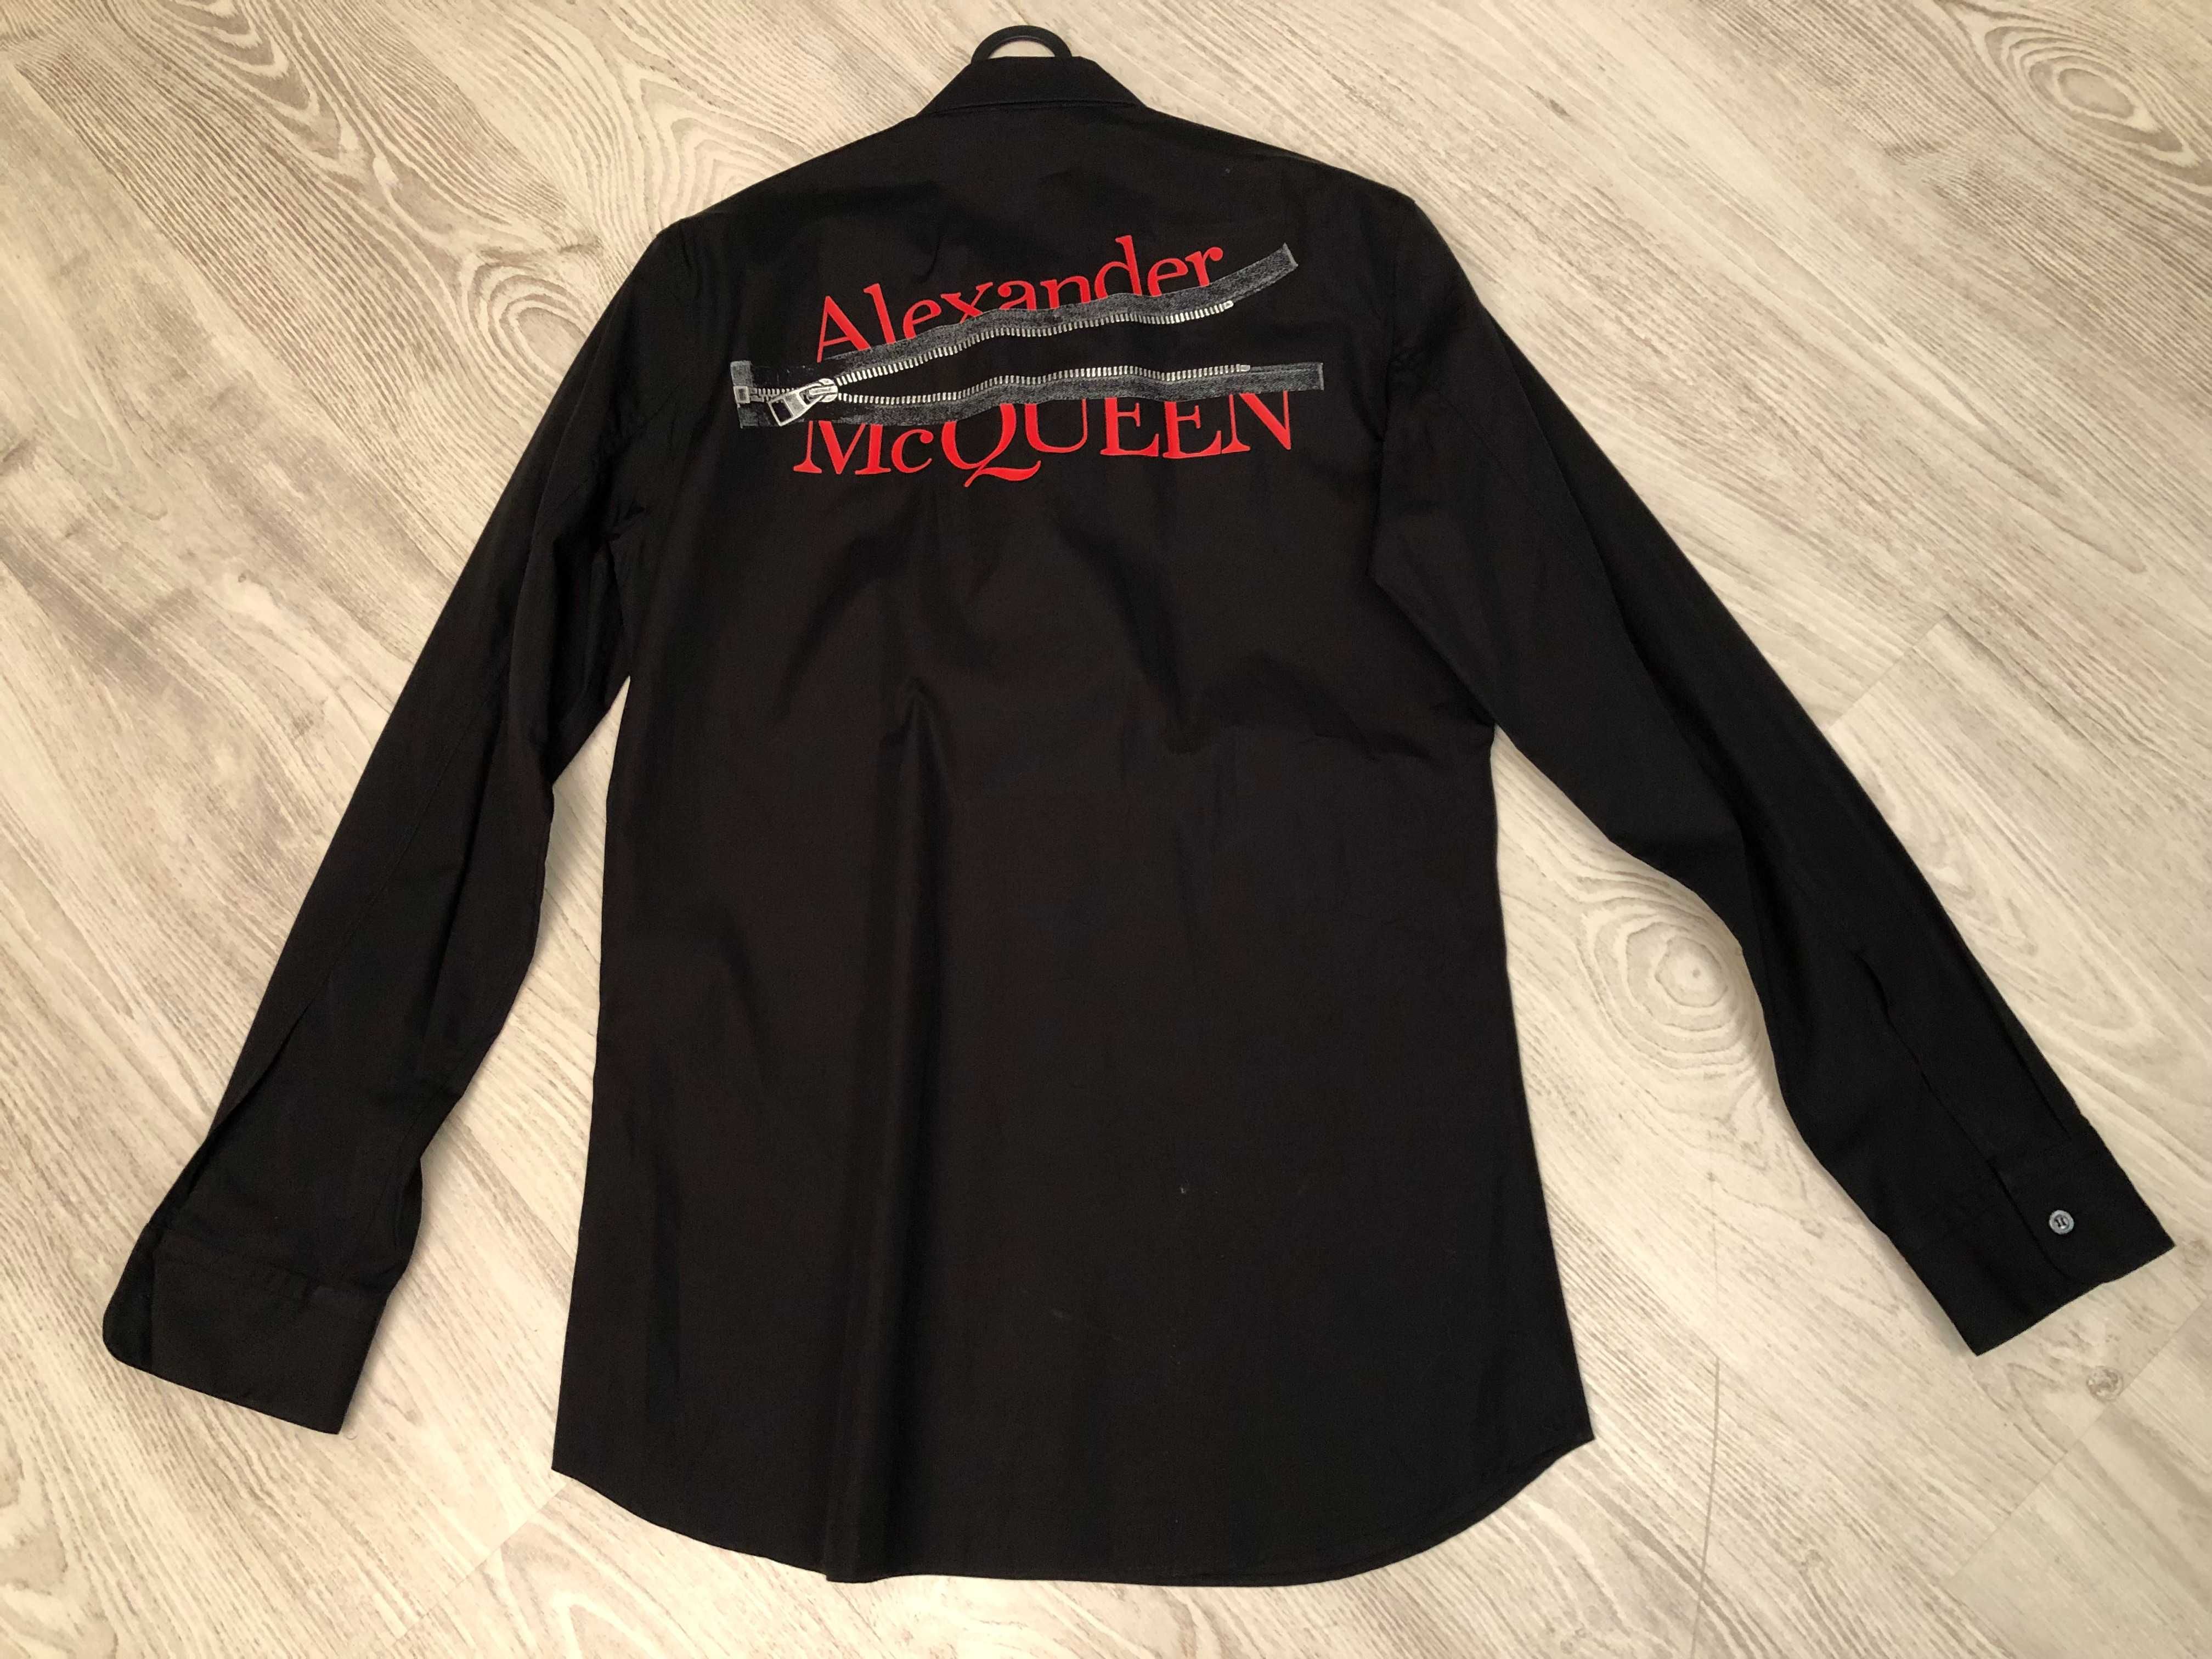 Alexander McQueen camasa M barbatesca, originala, retail 450 euro